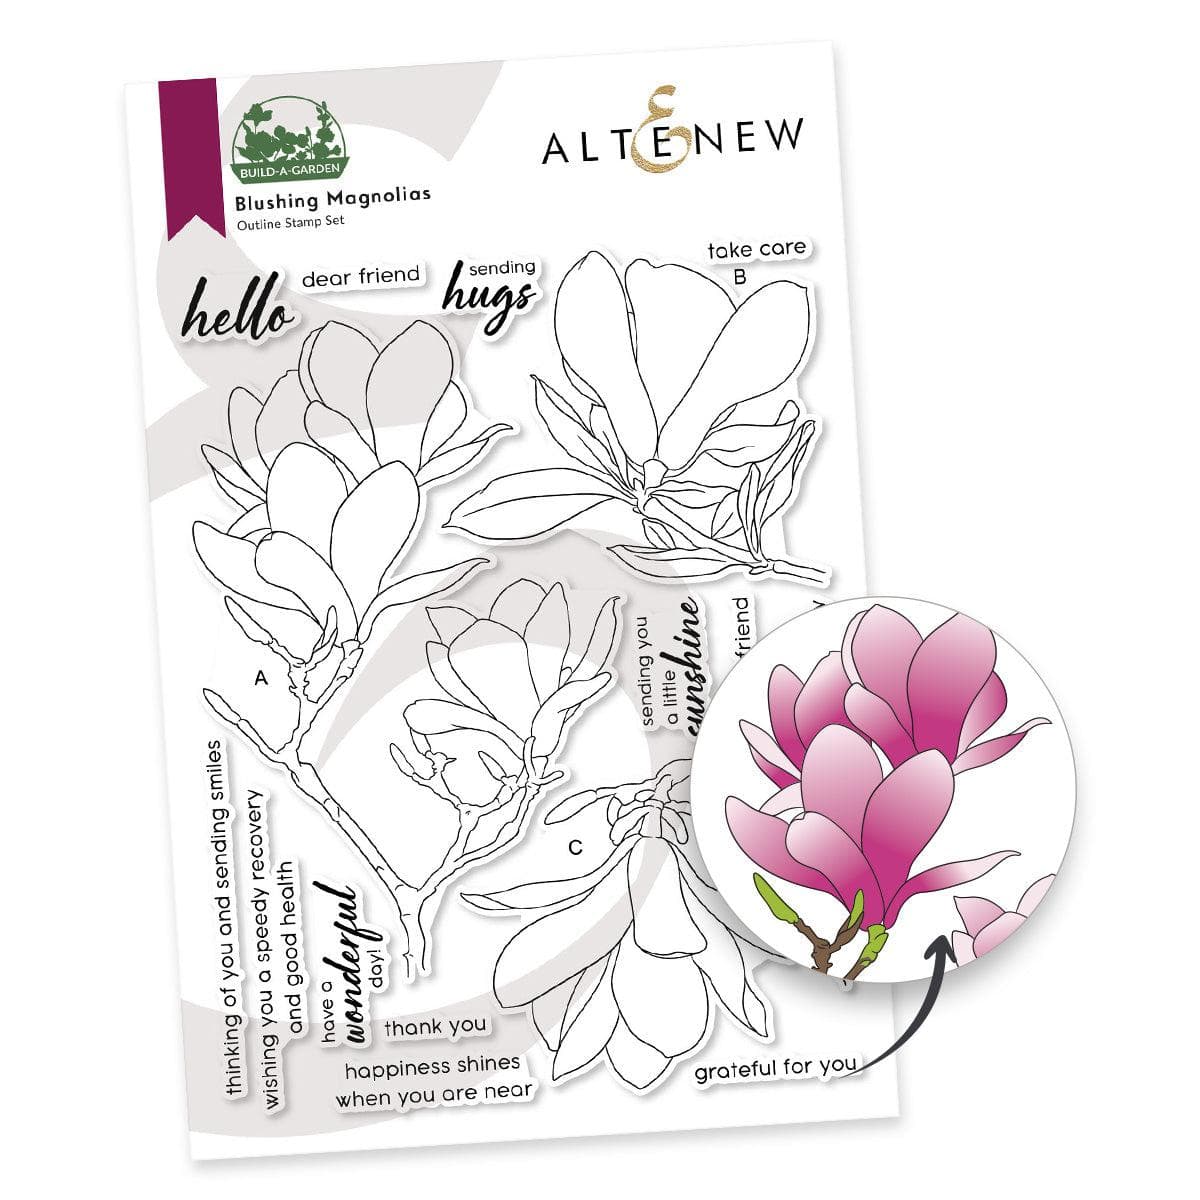 Altenew Build-A-Garden Bundle Build-A-Garden: Blushing Magnolias & Add-on Die Bundle